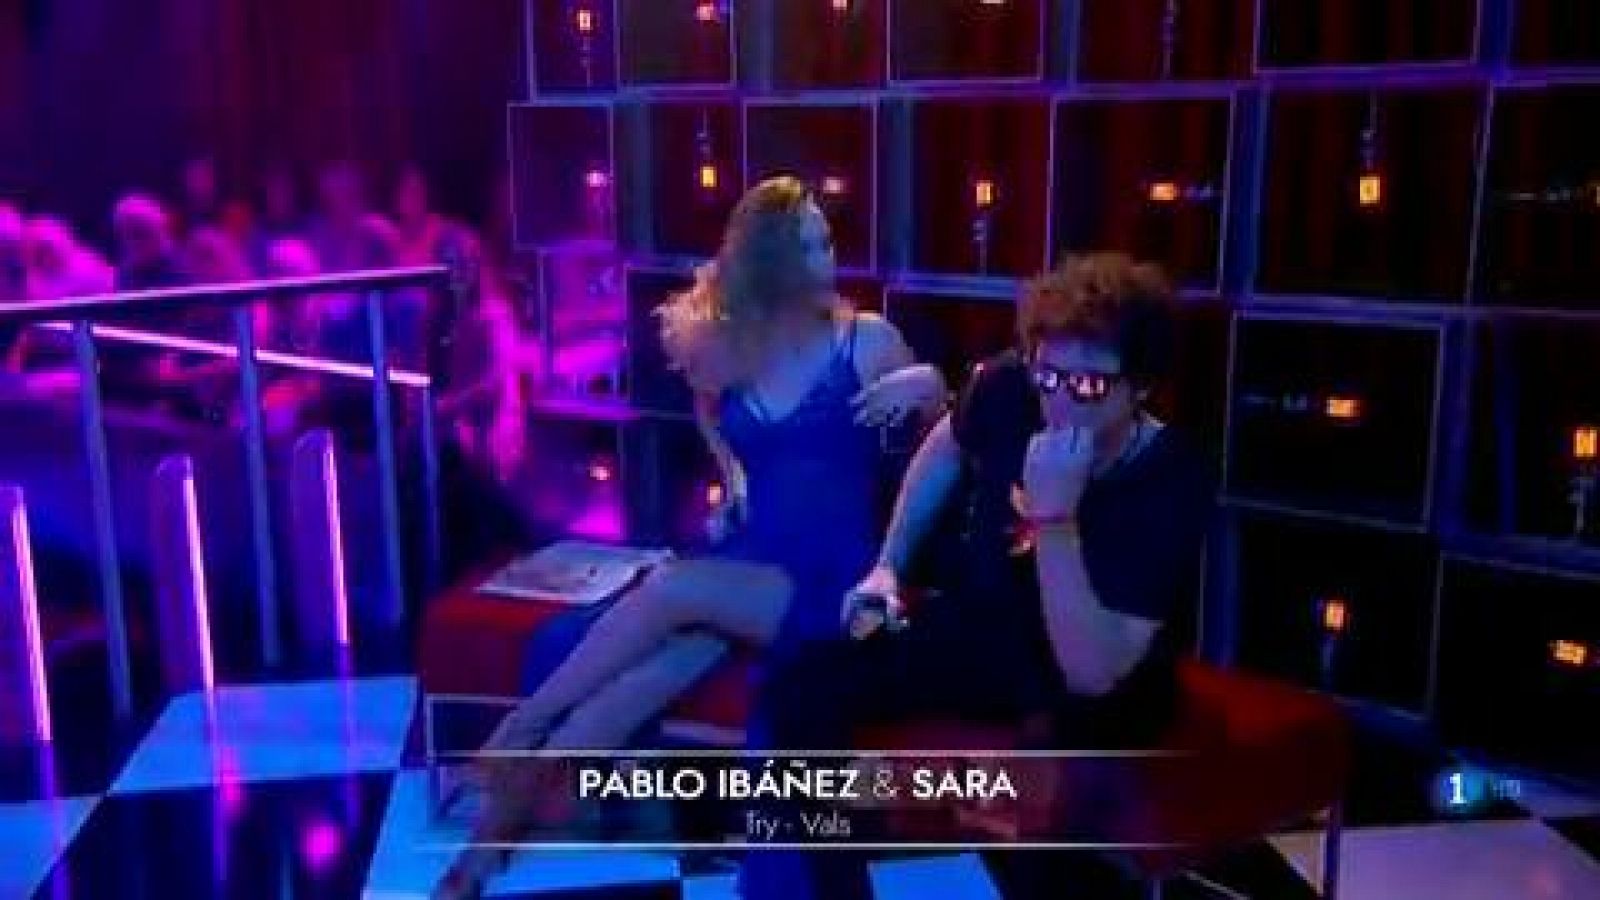 Bailando con las estrellas - Pablo Ibáñez y Sara Baudín bailan "Try"